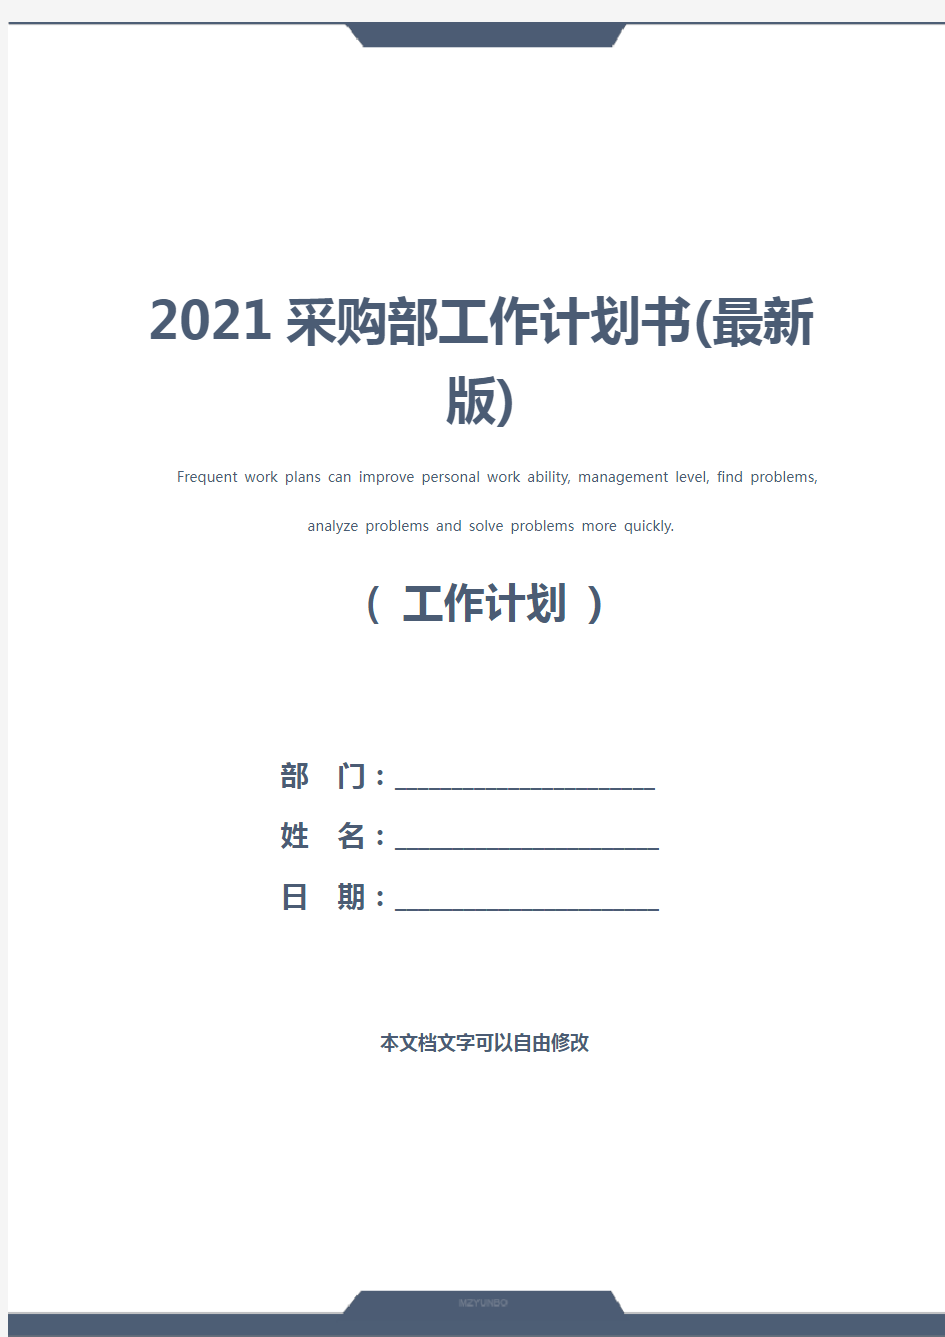 2021采购部工作计划书(最新版)